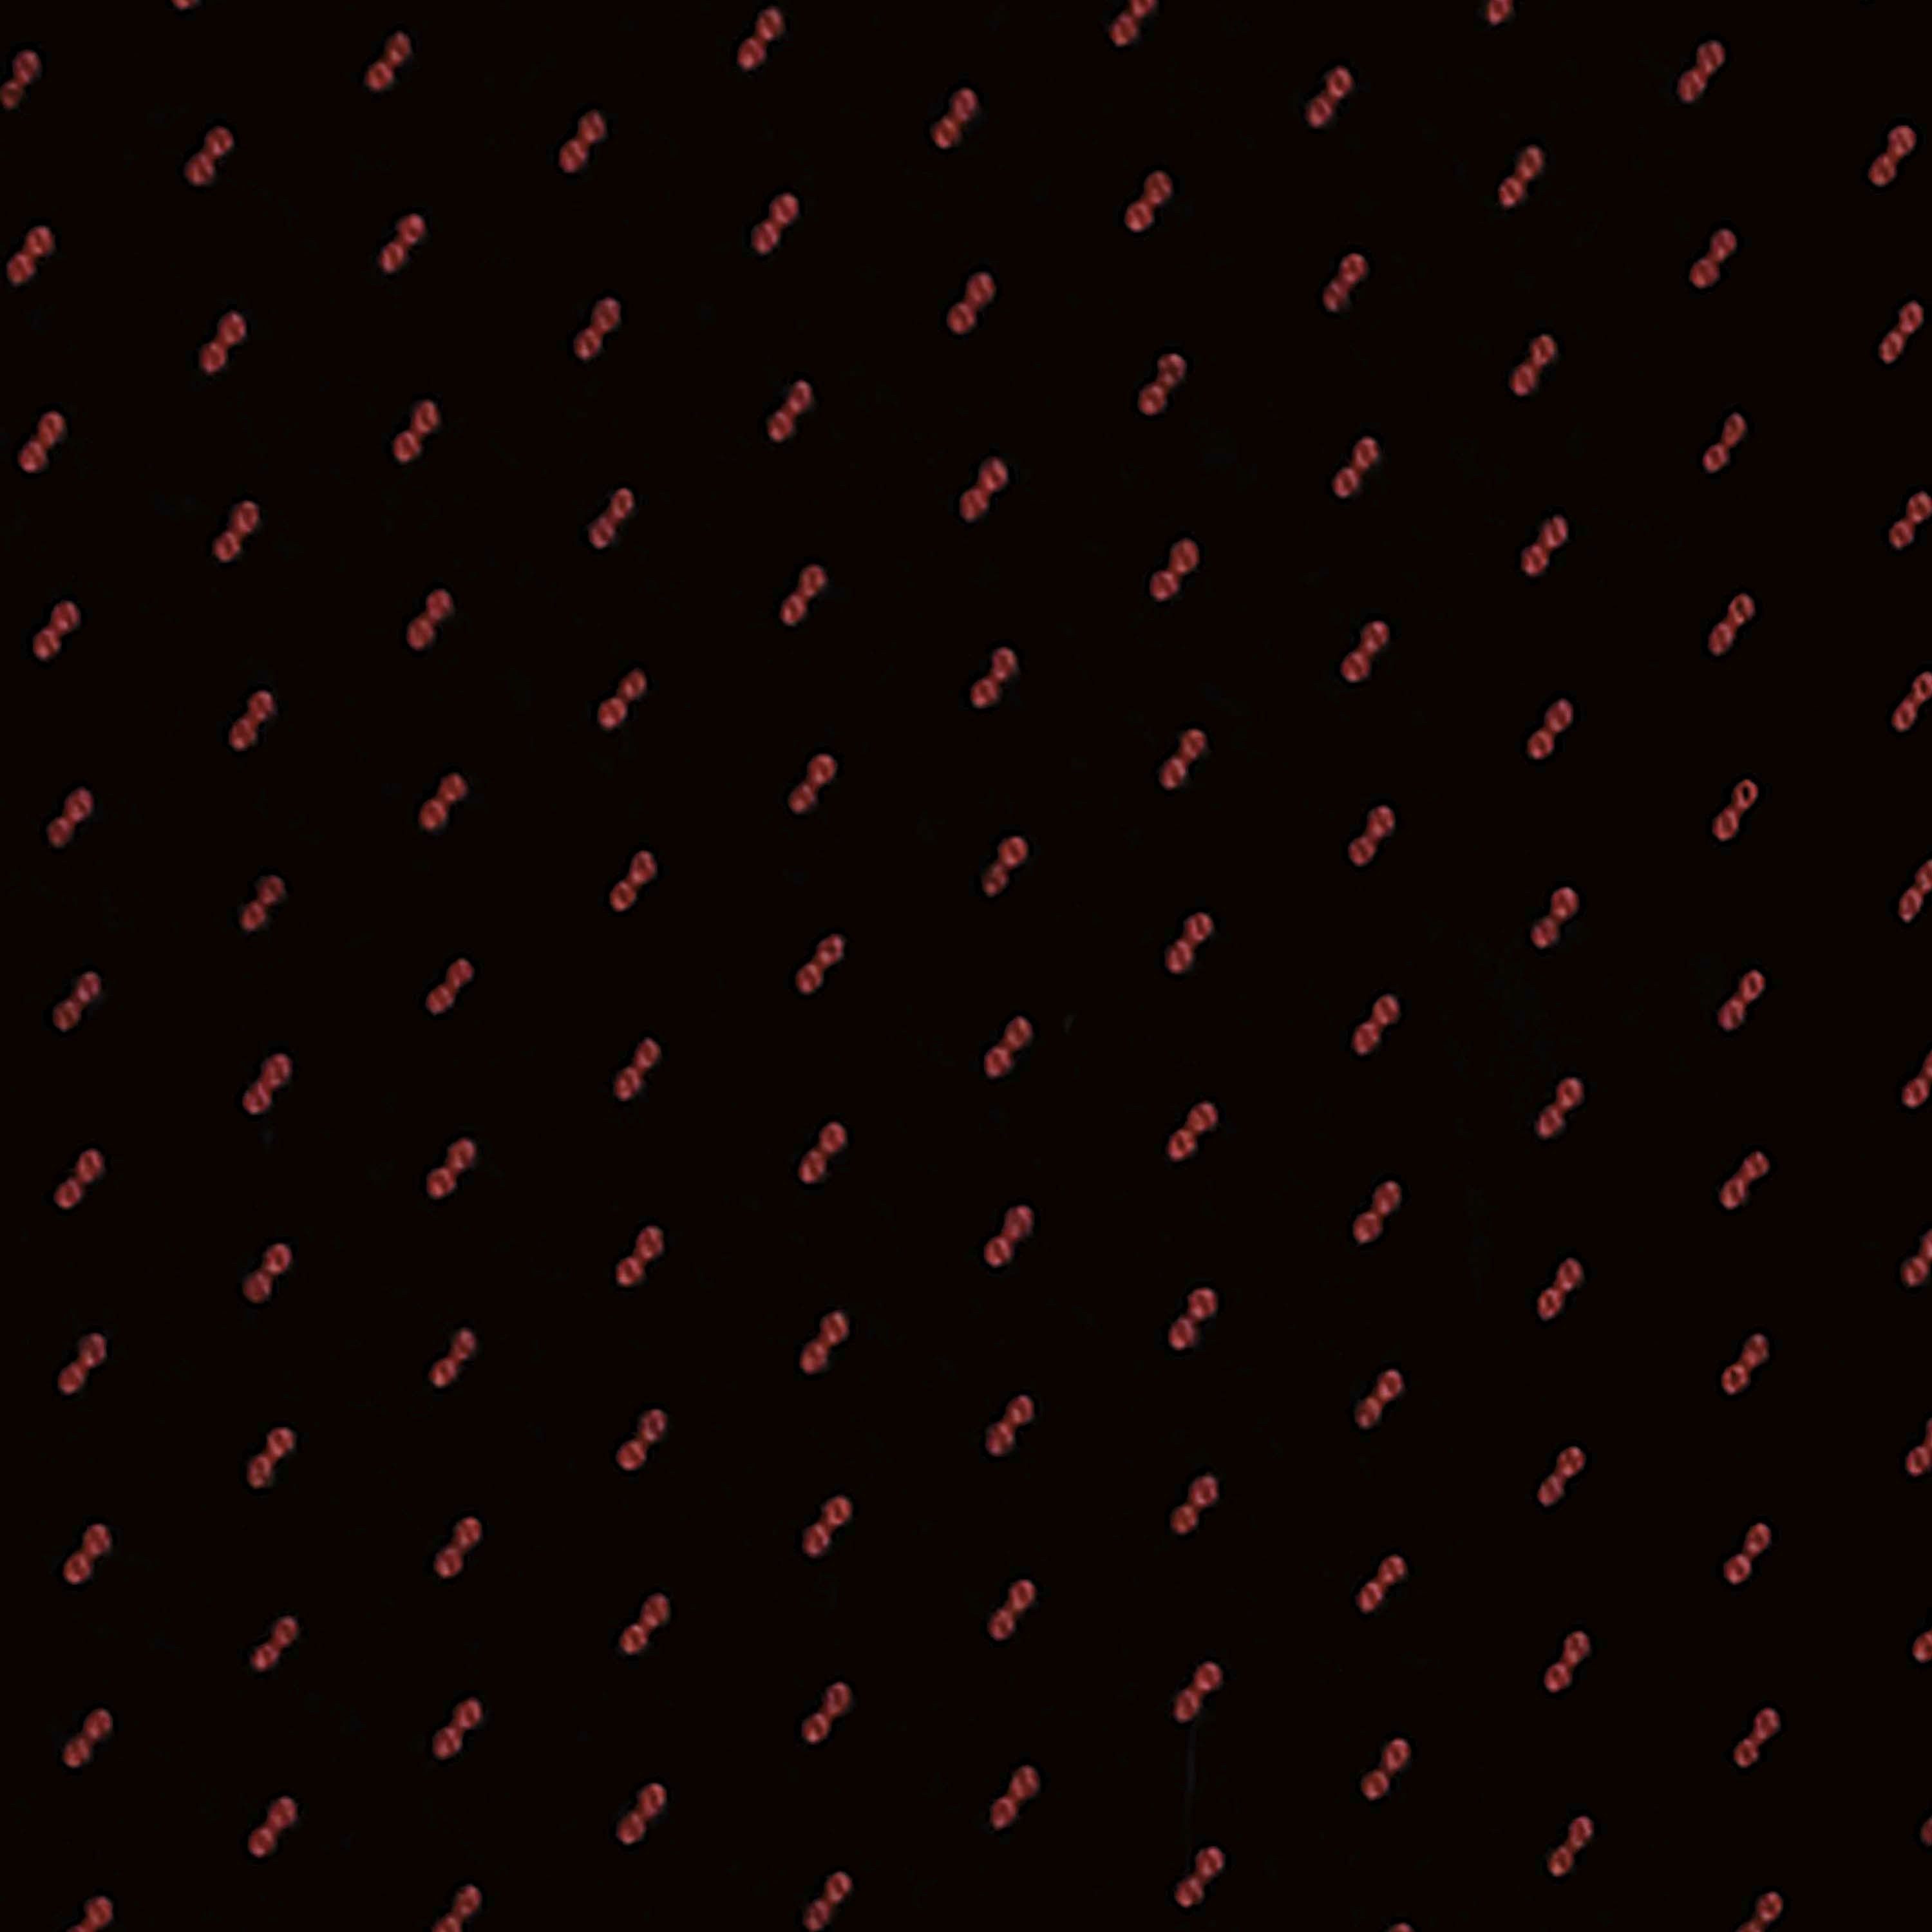 2-tlg Einzelsitz und für Bestehend Autositzbezug 1" für Passform rot, Kombi, in "Profi universelle Petex Sitzbezug Doppelsitz, Transporter/ vorne, aus